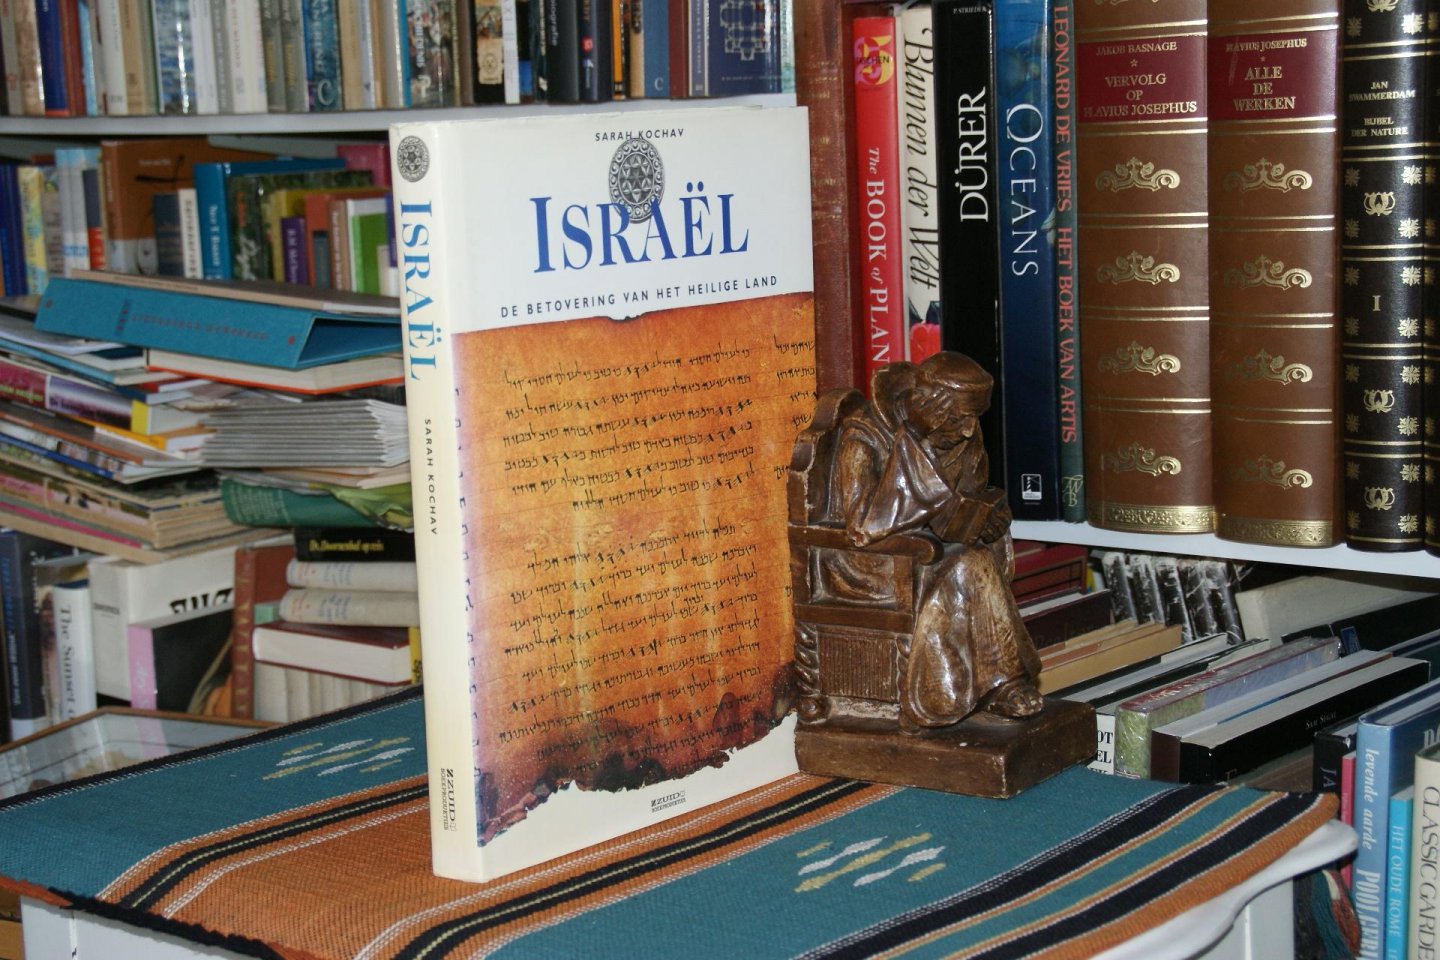 Kochav, Sarah - Betovering van het Heilige Land  Israel